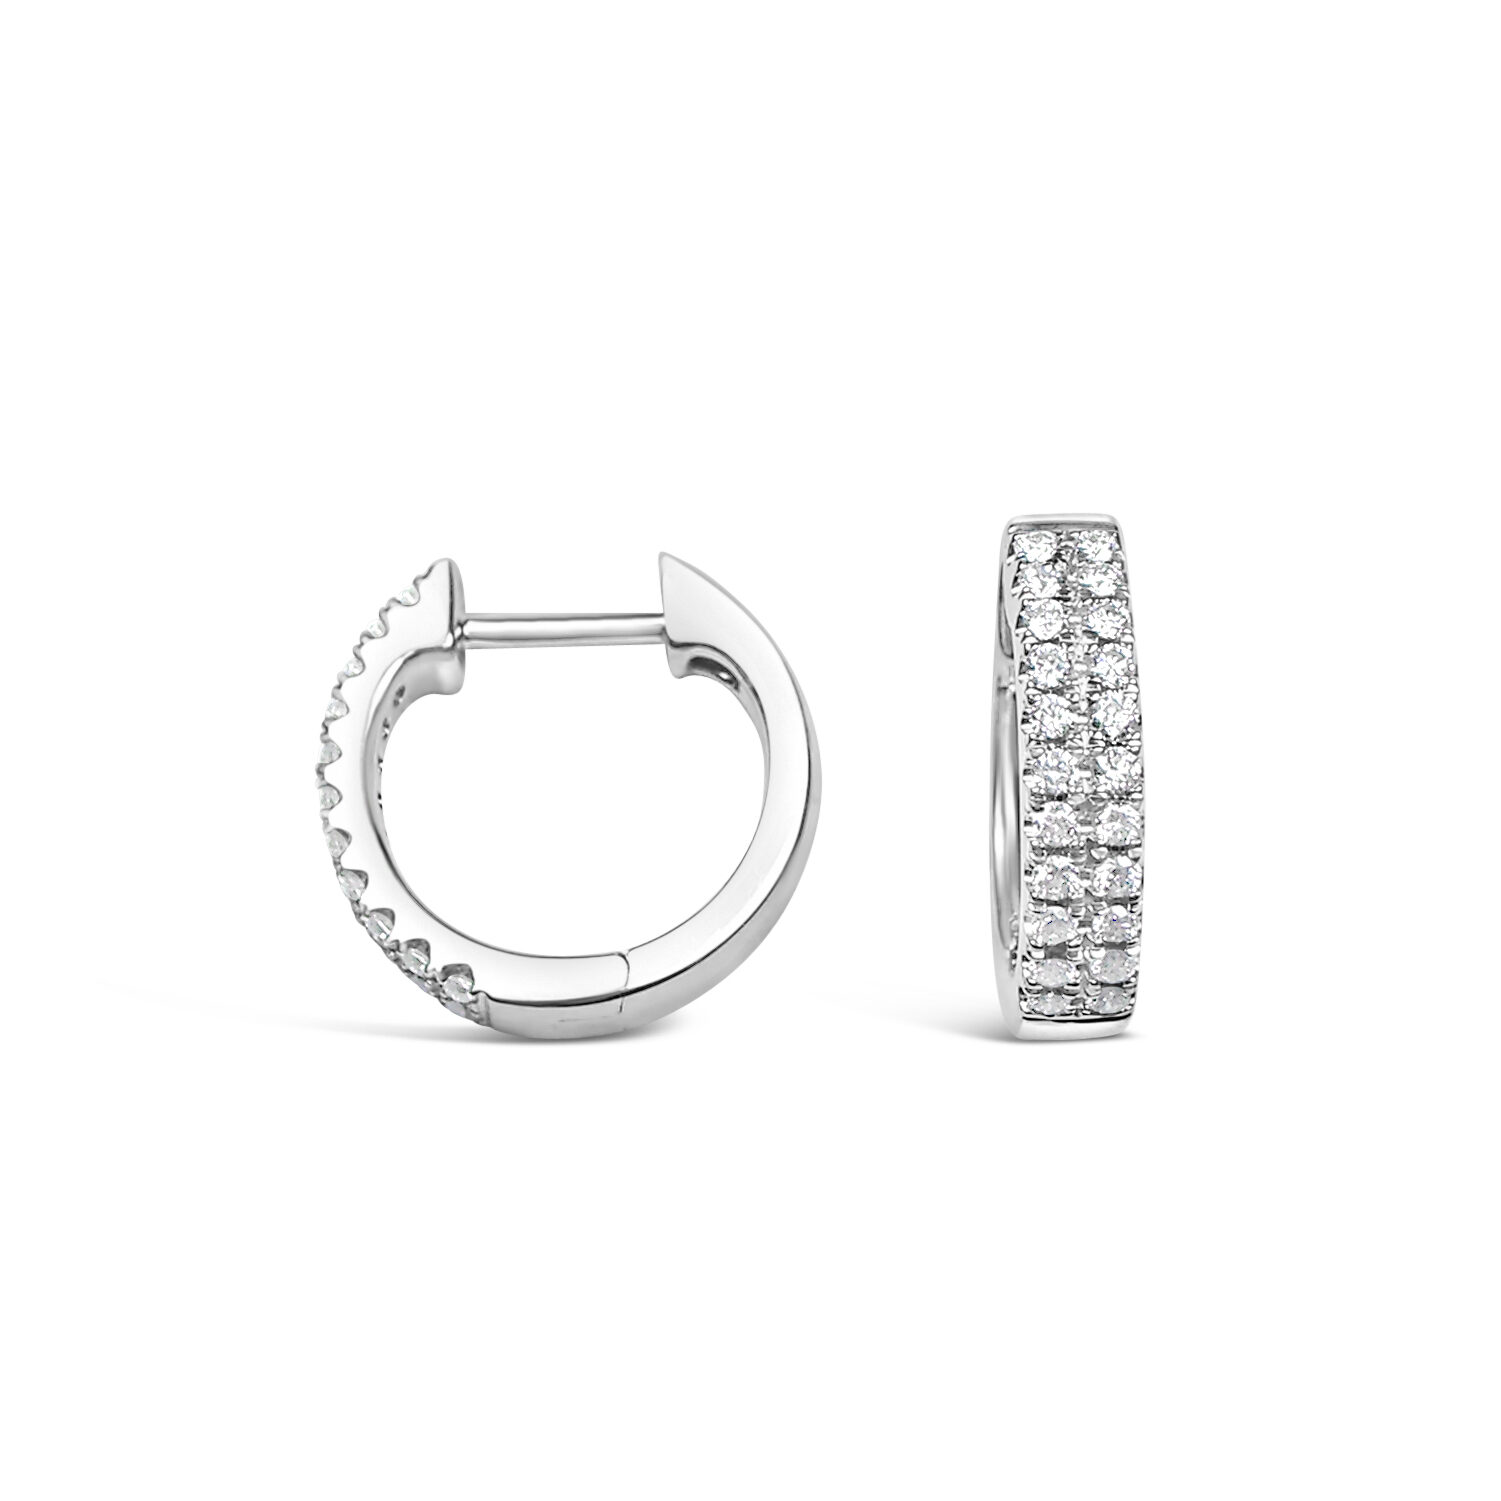 Double Row Diamond Huggies - Max Wilson Diamond Jeweller, Diamond ring ...